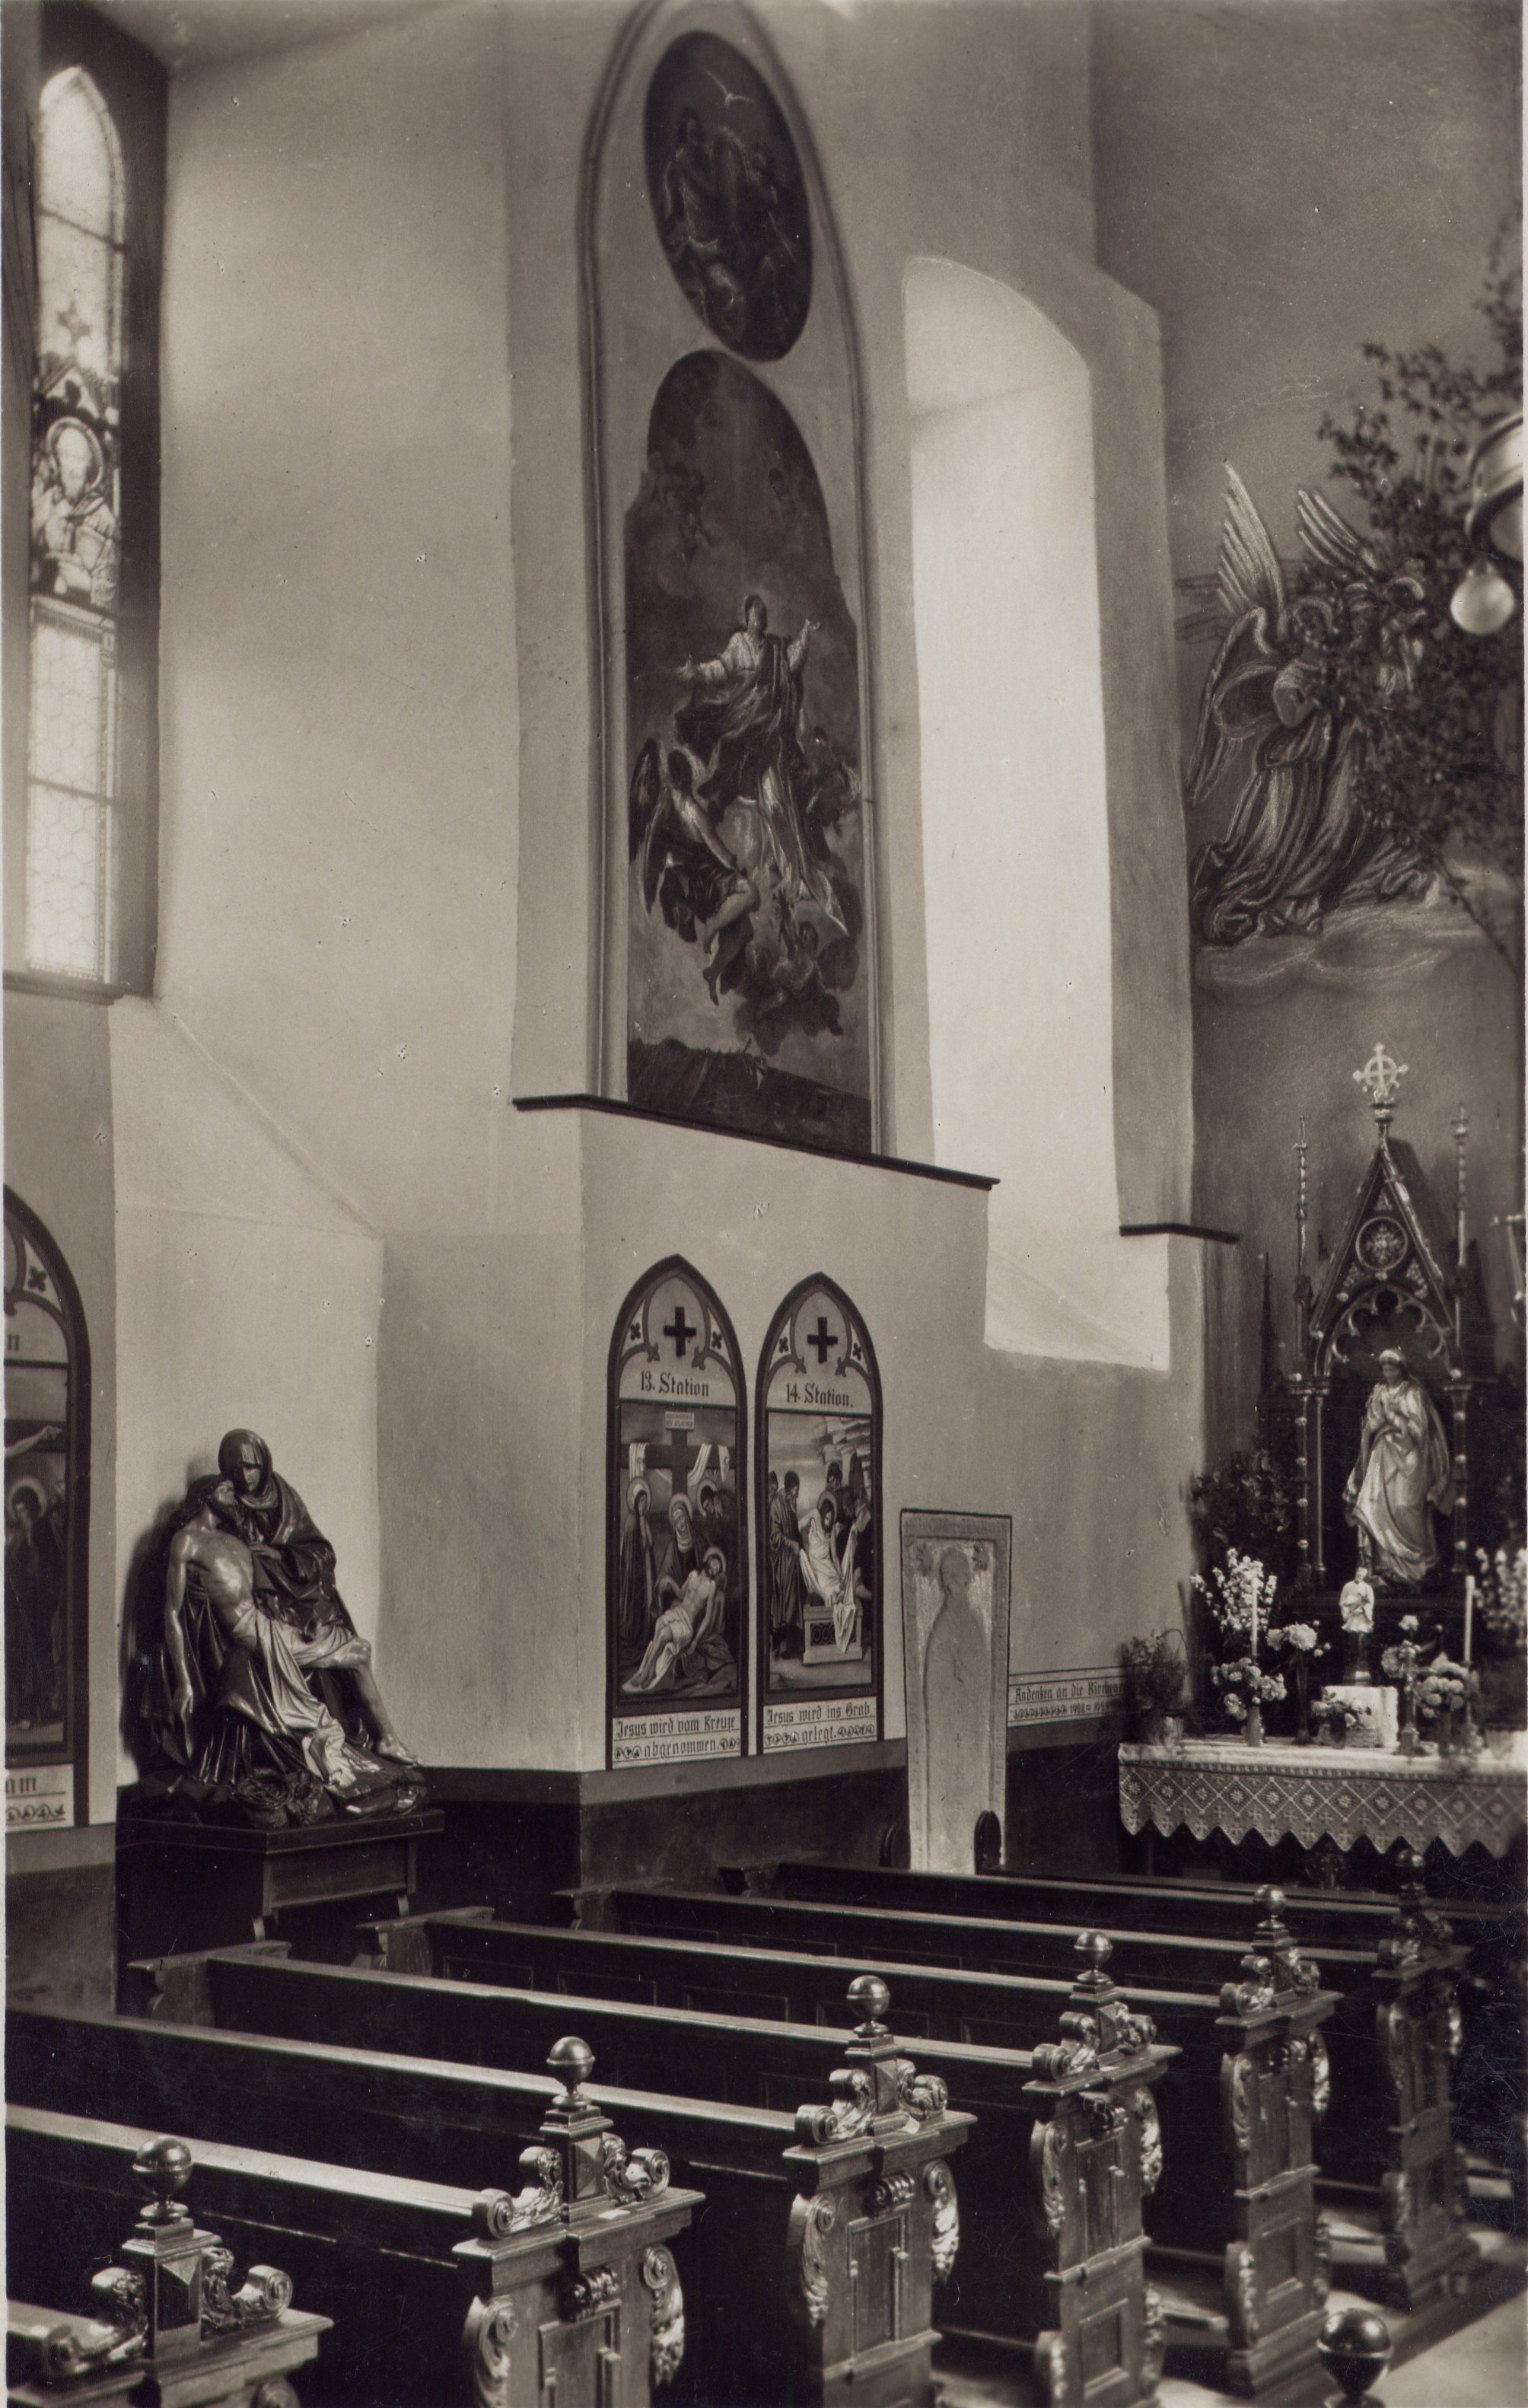 Conradusstein, ca. 1938